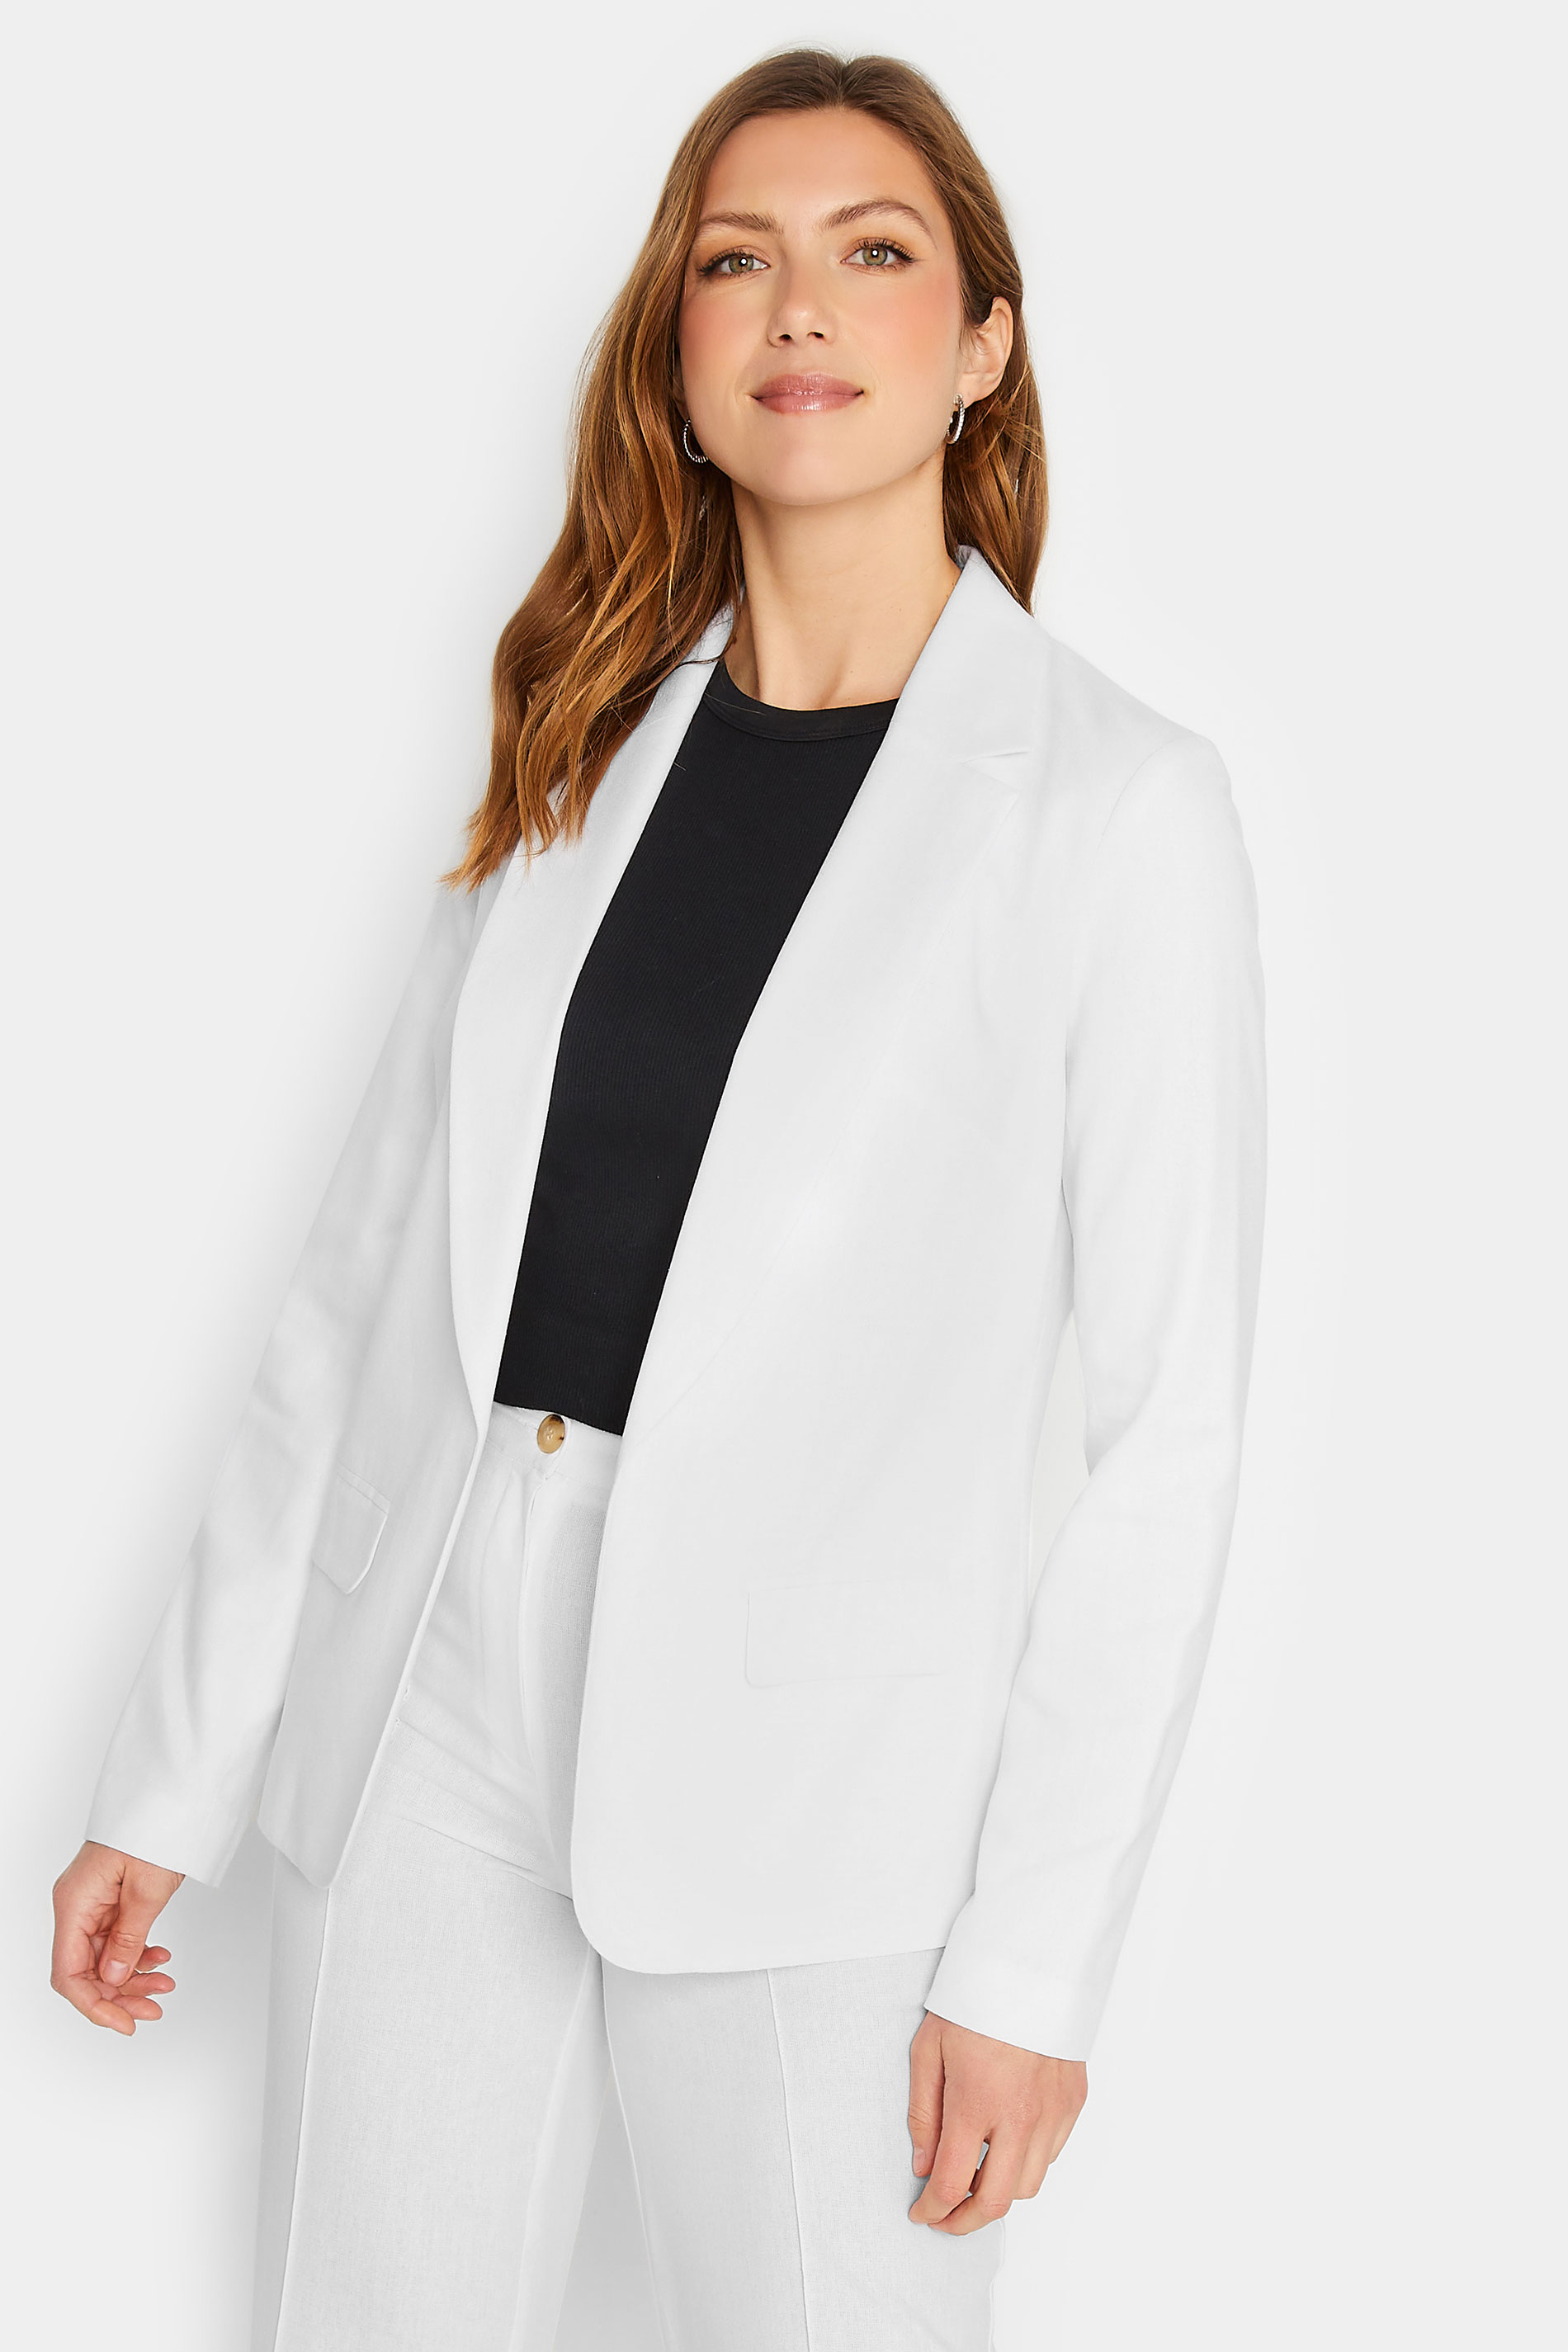 LTS Tall White Linen Blazer Jacket | Long Tall Sally  1